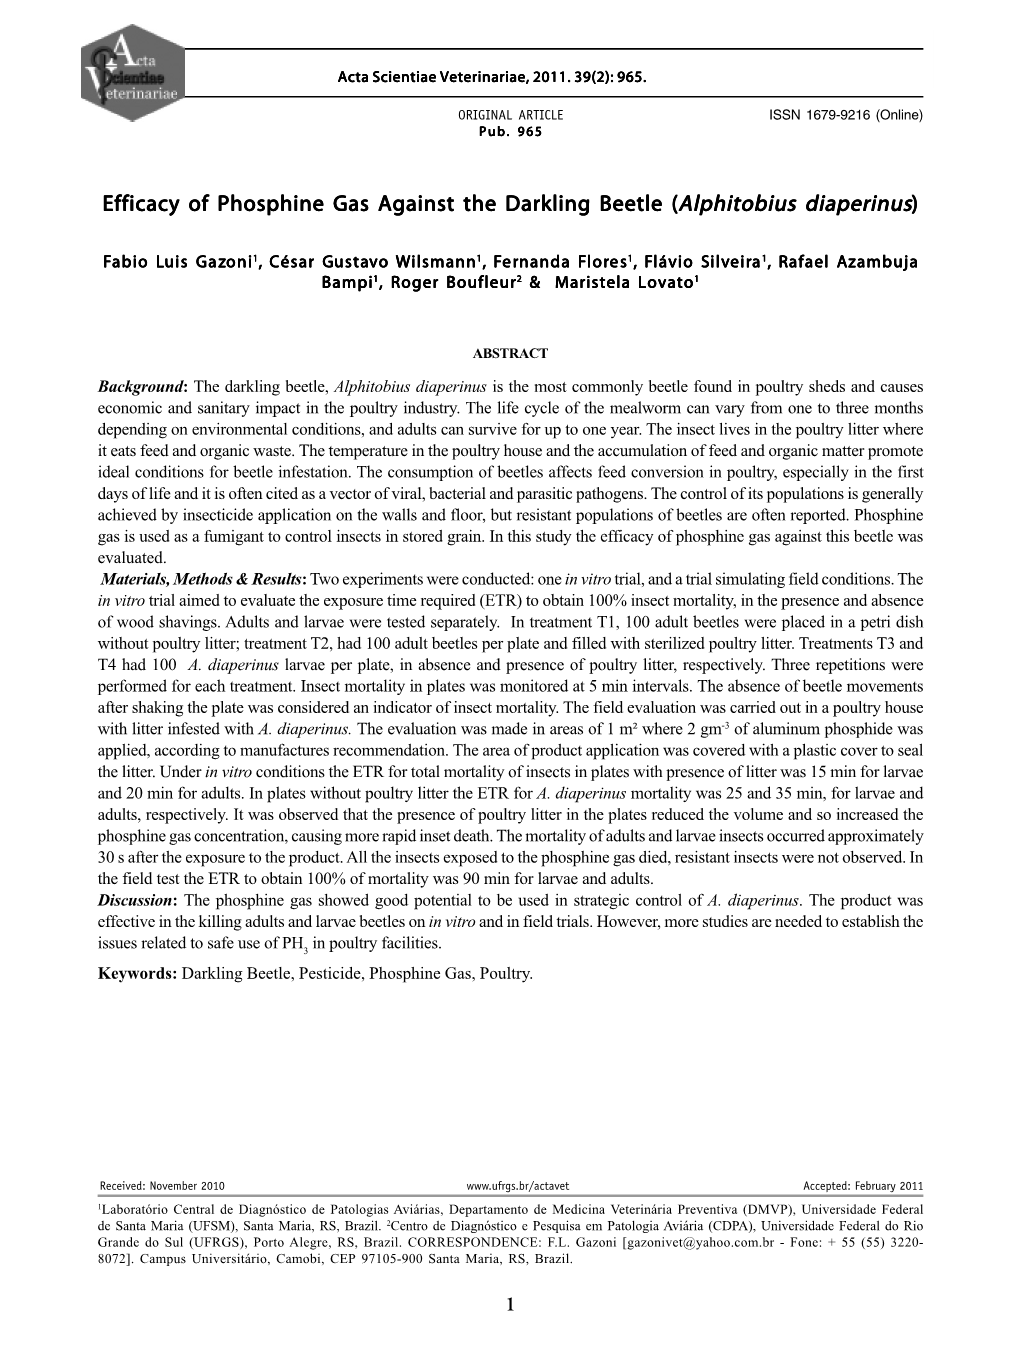 Efficacy of Phosphine Gas Against the Darkling Beetle (Alphitobius Diaperinus)